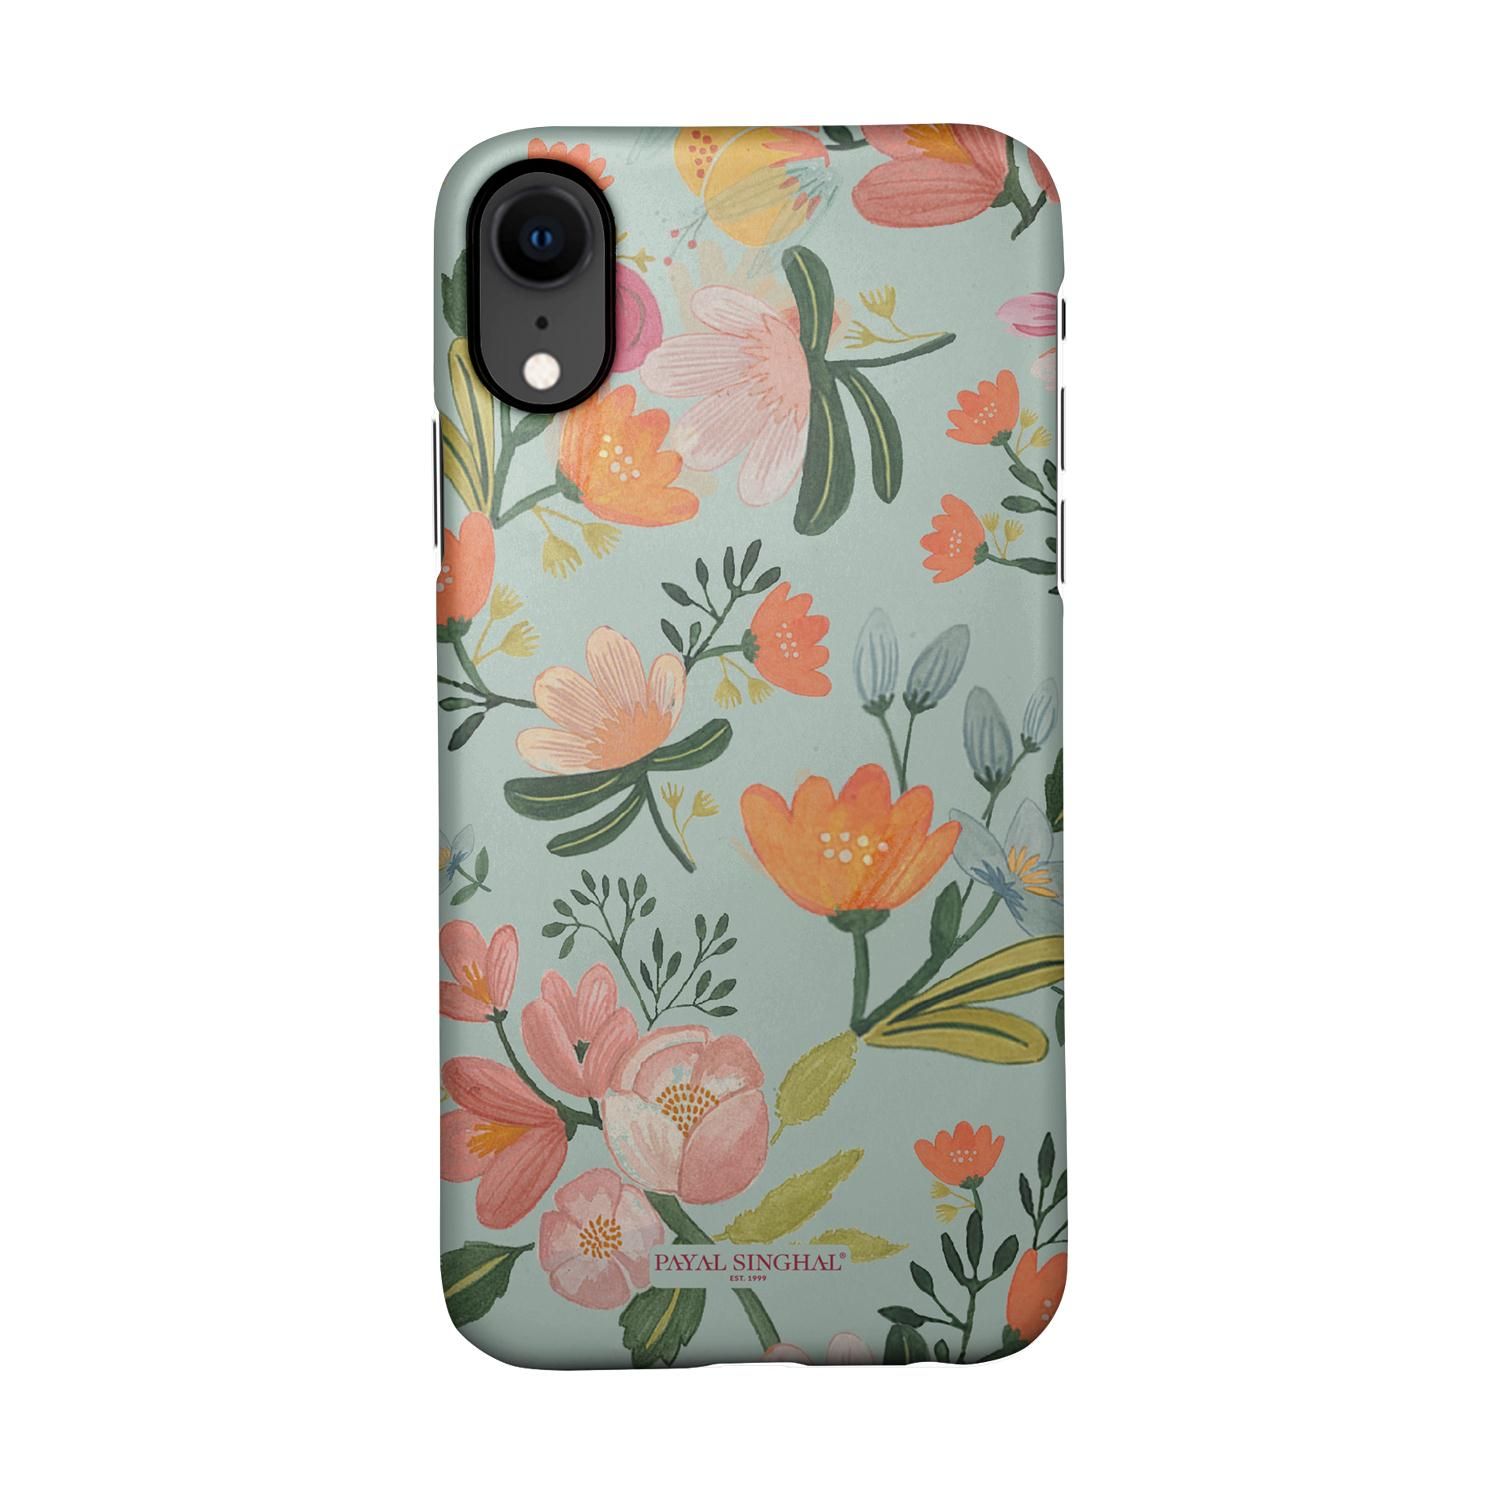 Buy Payal Singhal Aqua Handpainted Flower - Sleek Phone Case for iPhone XR Online